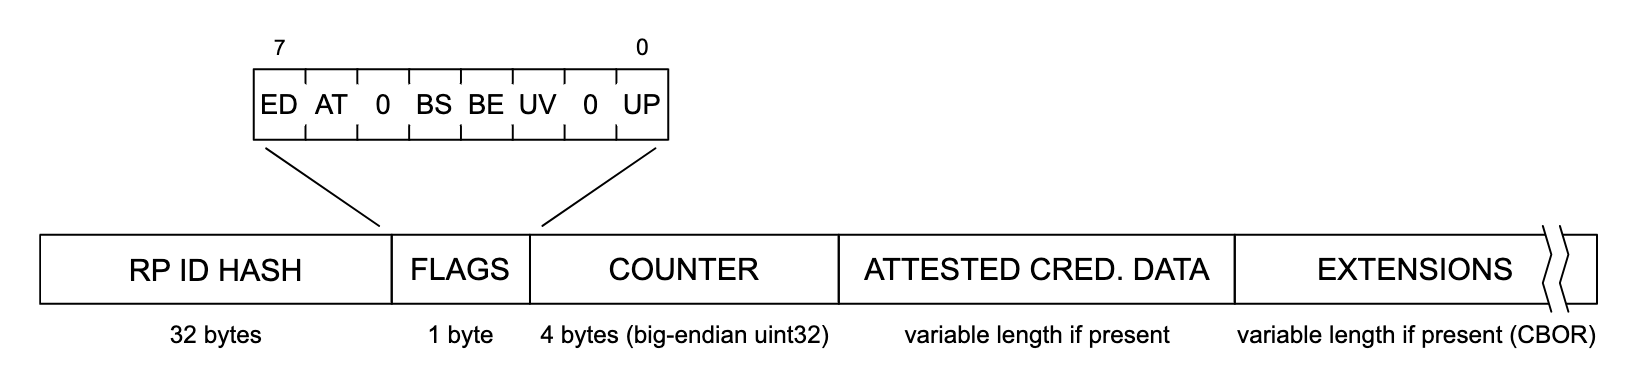 驗證資料結構的說明。從左到右，資料結構的每個部分依序讀取了「RP ID HASH」(32 位元組)、「FLAGS」(1 位元組)、「COUNTER」(4 個位元組、big-endian uint32)、「ATTESTE CRED」。DATA (如有可變長度) 和「EXTENSIONS」(如果有的話，可變長度 (CBOR)。)展開「FLAGS」區段，顯示由左至右標示的潛在標幟清單，標籤為「ED」、「AT」、「0」、「BS」、「BE」、「UV」、「0」和「UP」。